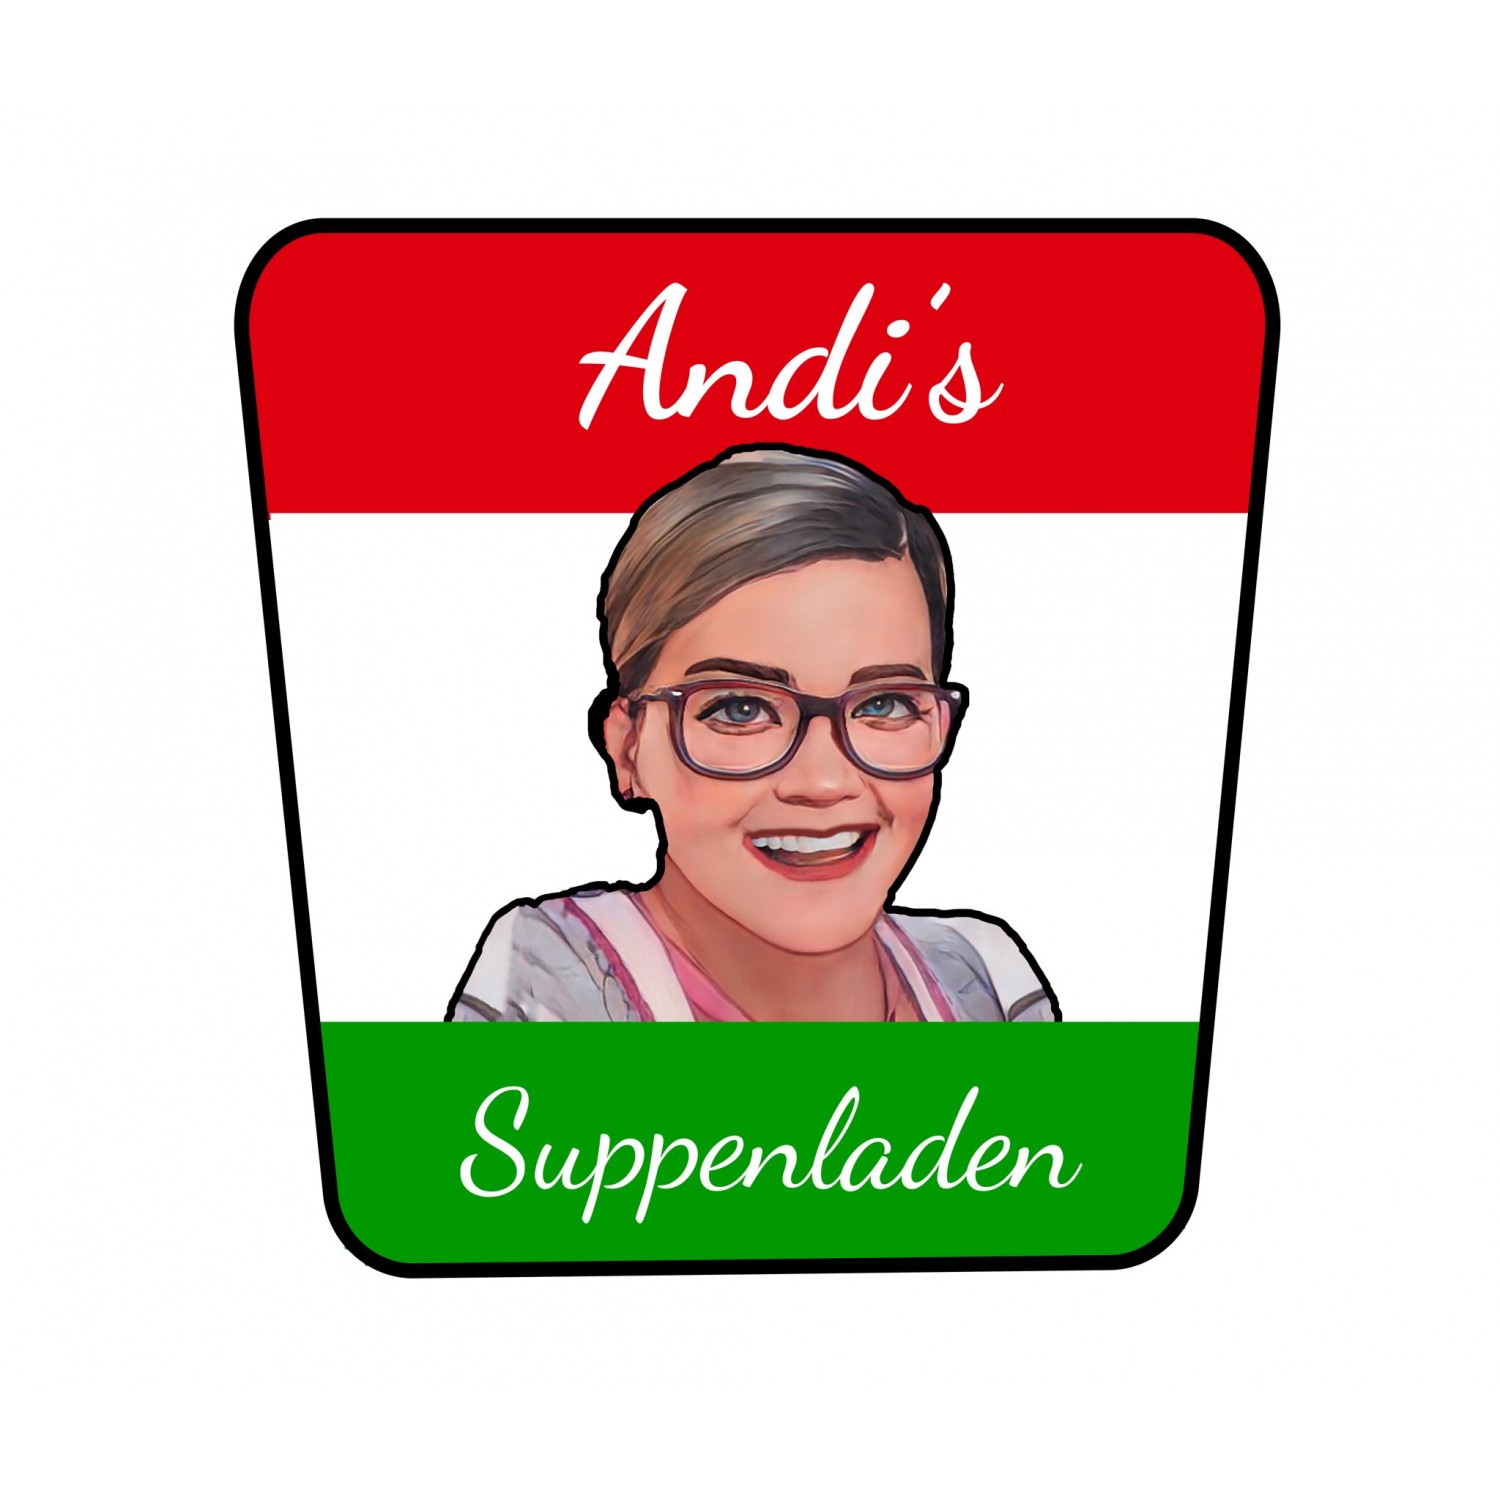 Andi's Suppenladen